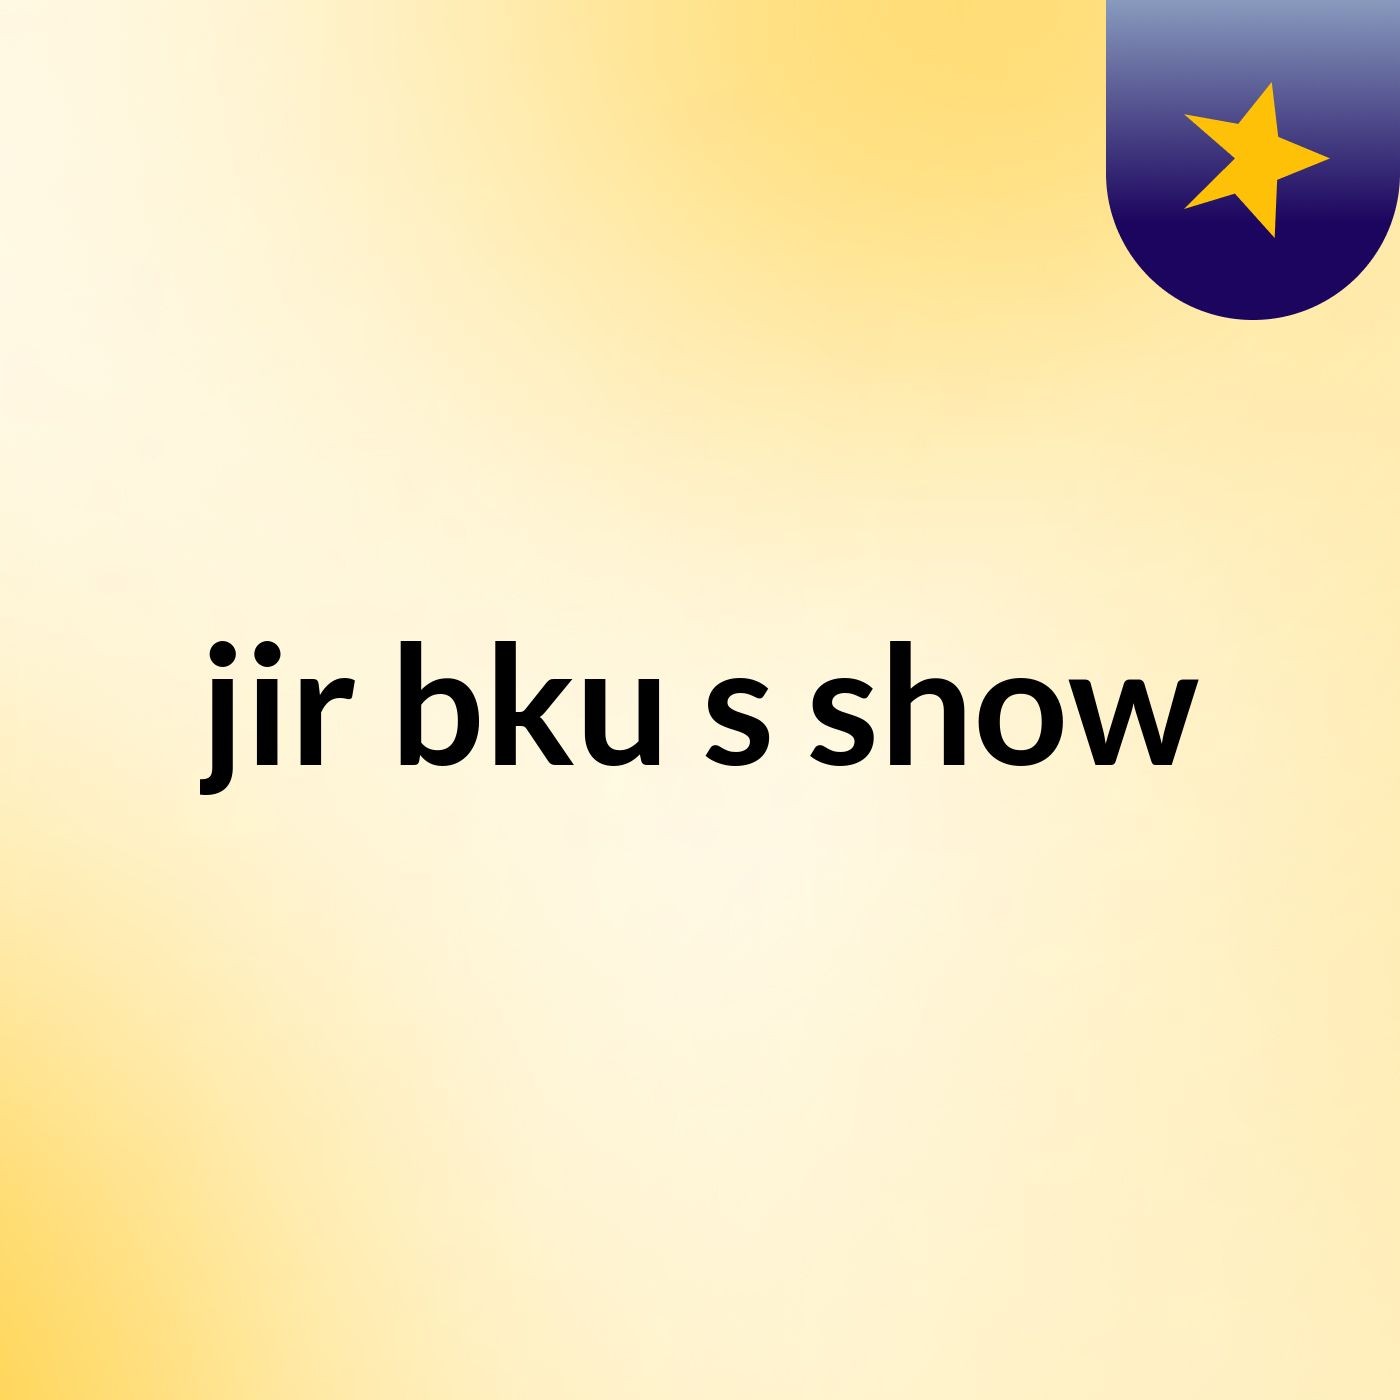 jir bku's show